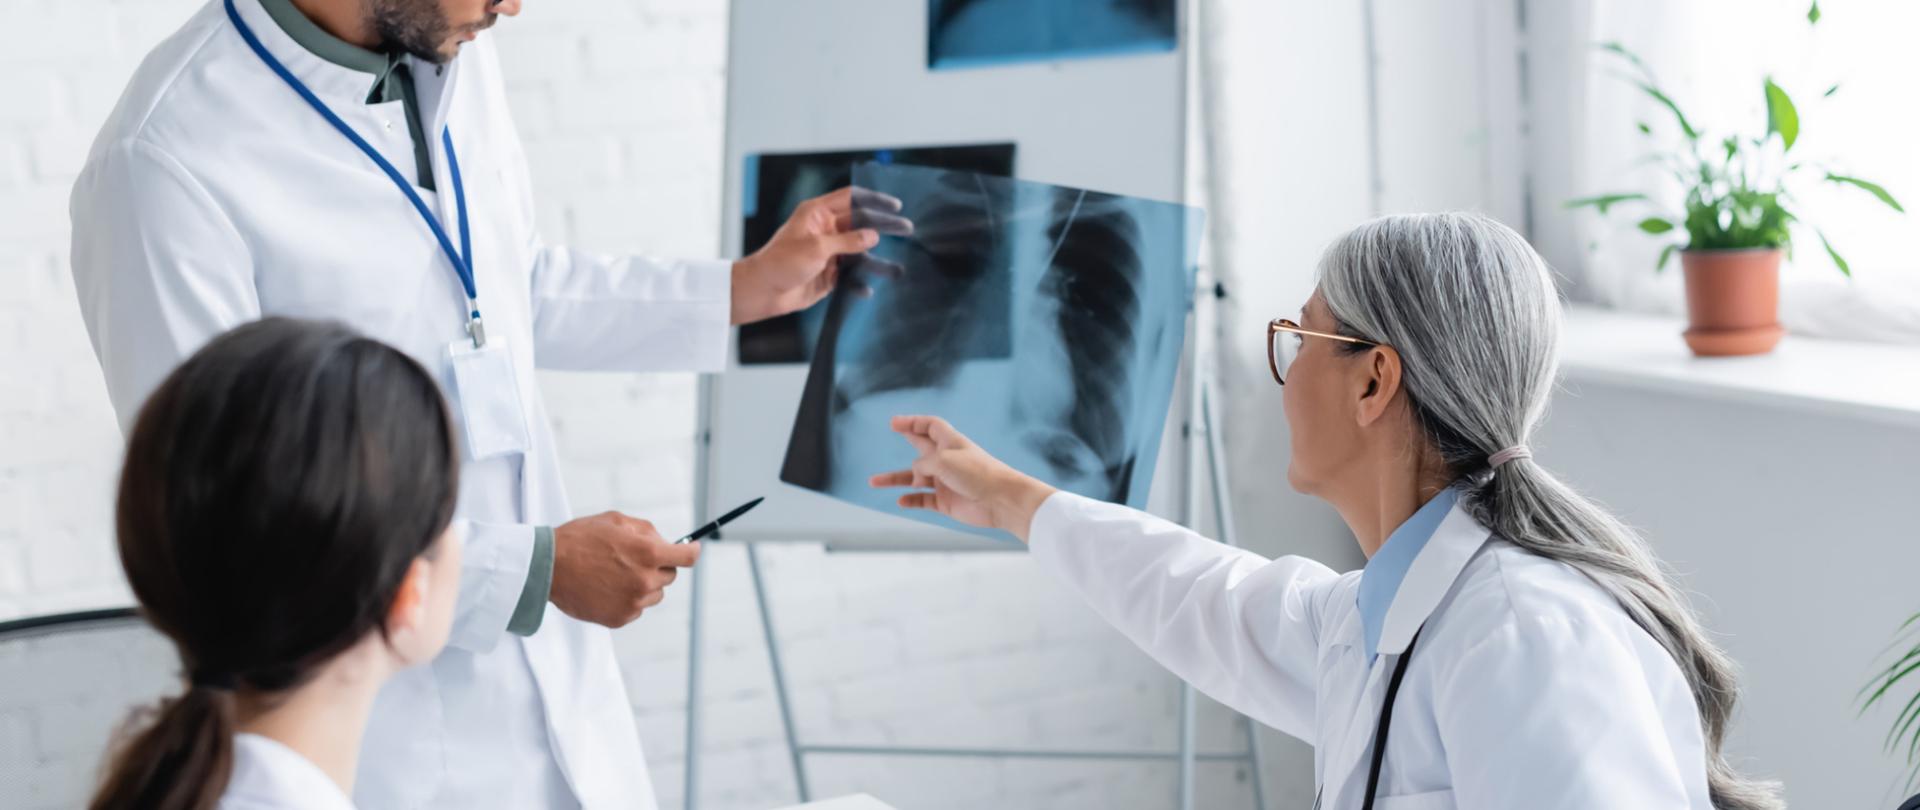 Na zdjęciu są trzy osoby - to lekarze. Patrzą i wskazują na tablicę, na której znajduje się zdjęcie rentgenowskie płuc.